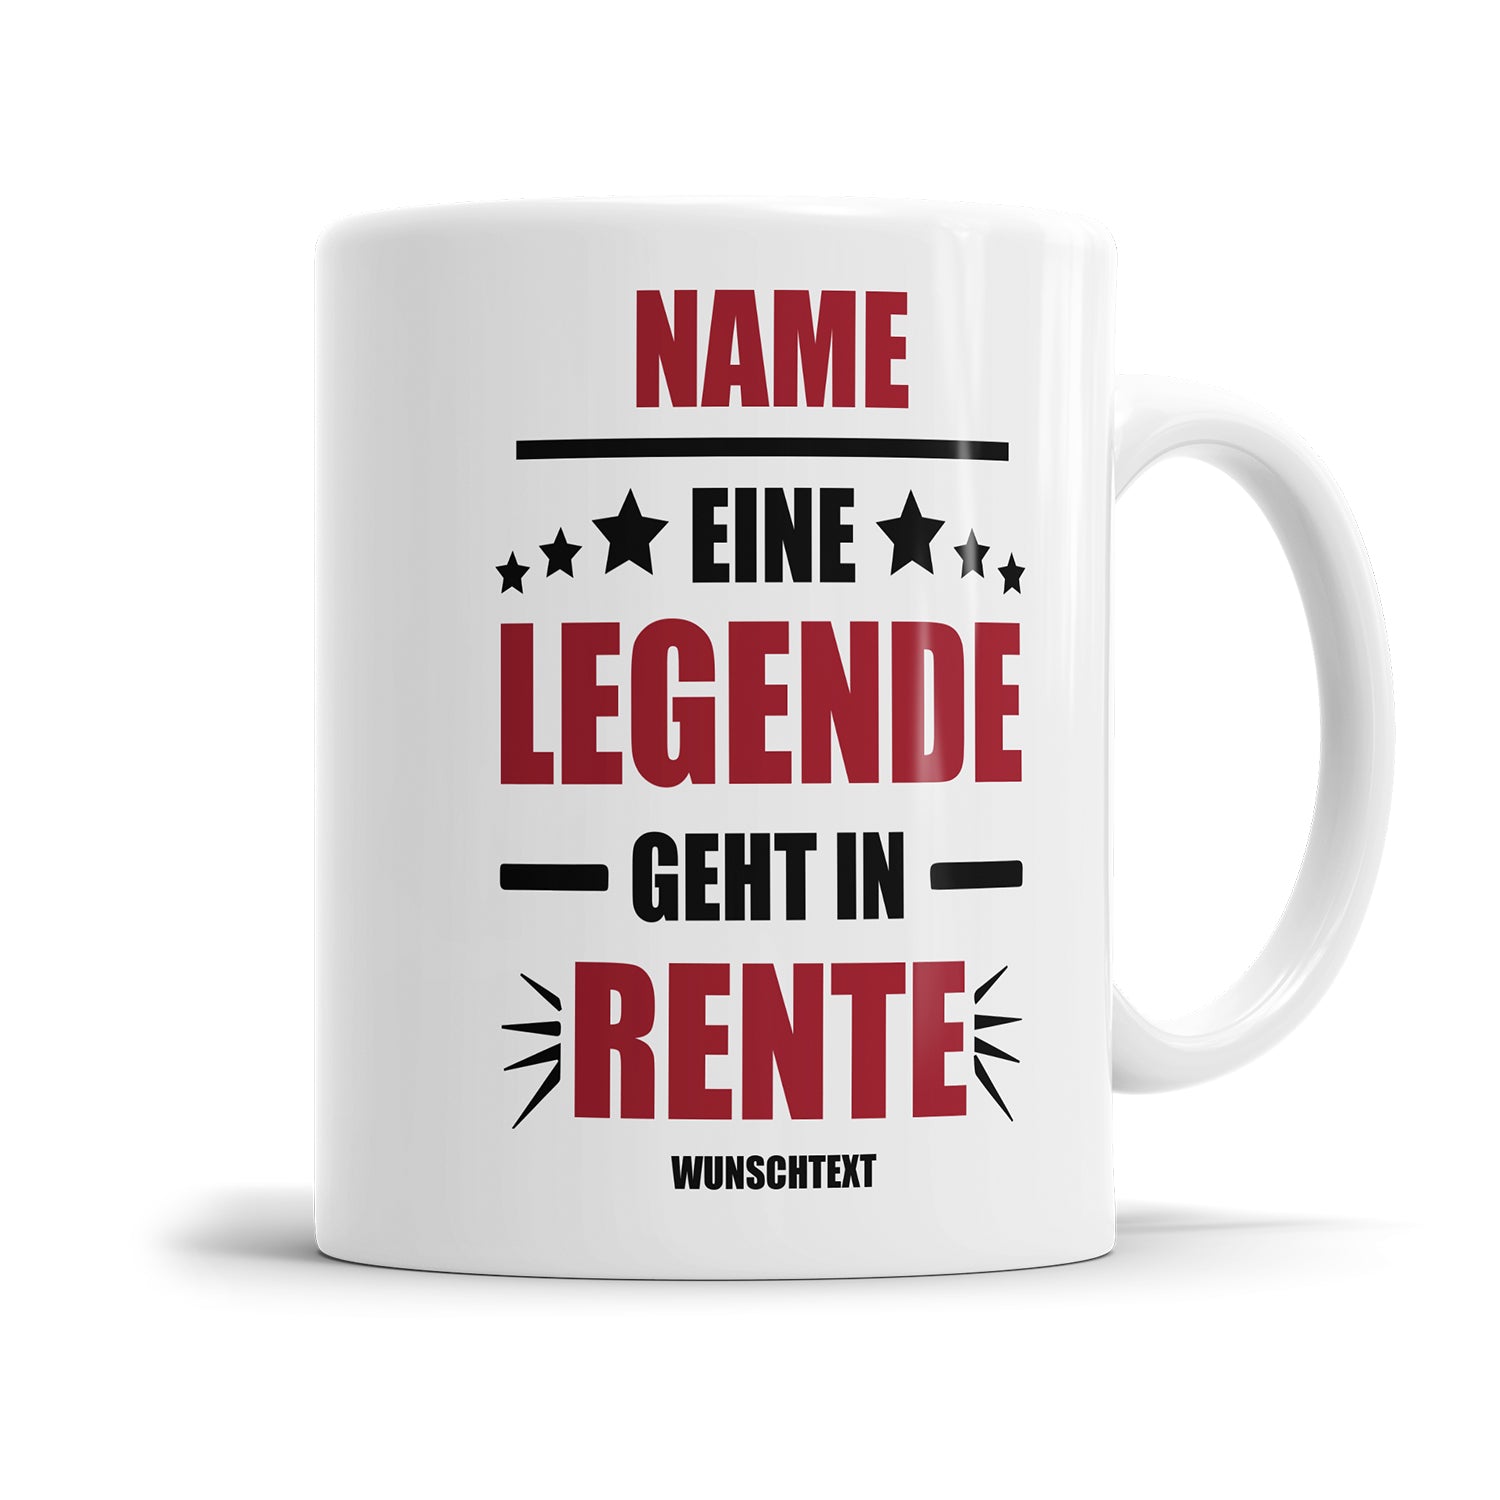 Rente Tasse Eine Legende geht in Rente personalisiert mit Name und Wunschtext Tasse Fulima